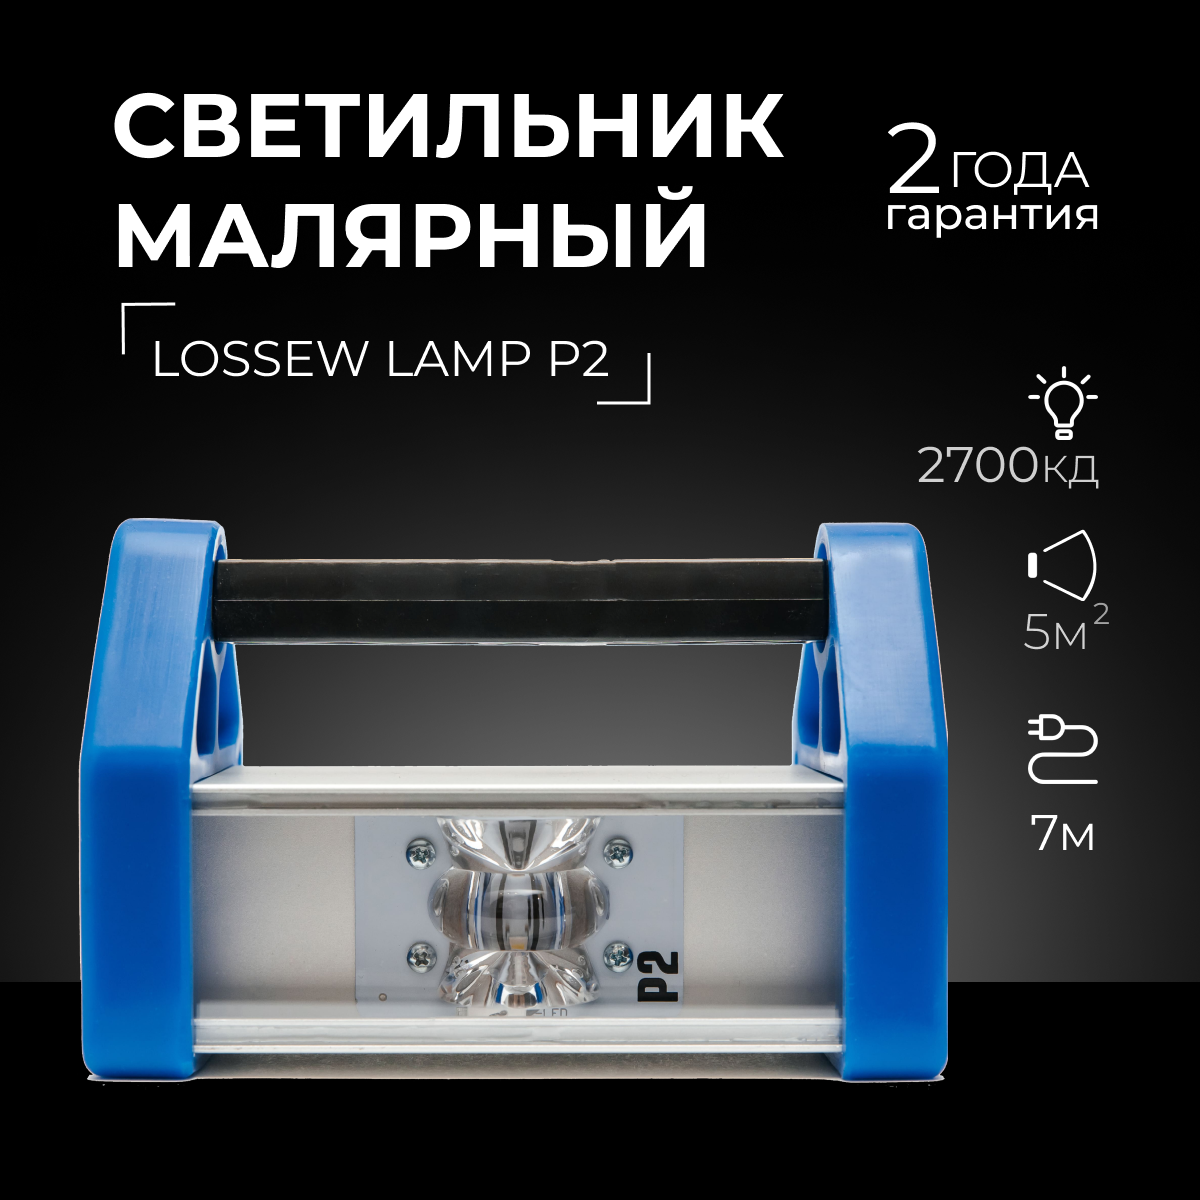 Лампа маляра Lossew Lamp P2/ Проявочная лампа / Малярная лампа / Лампа Лосева, От сети 220В